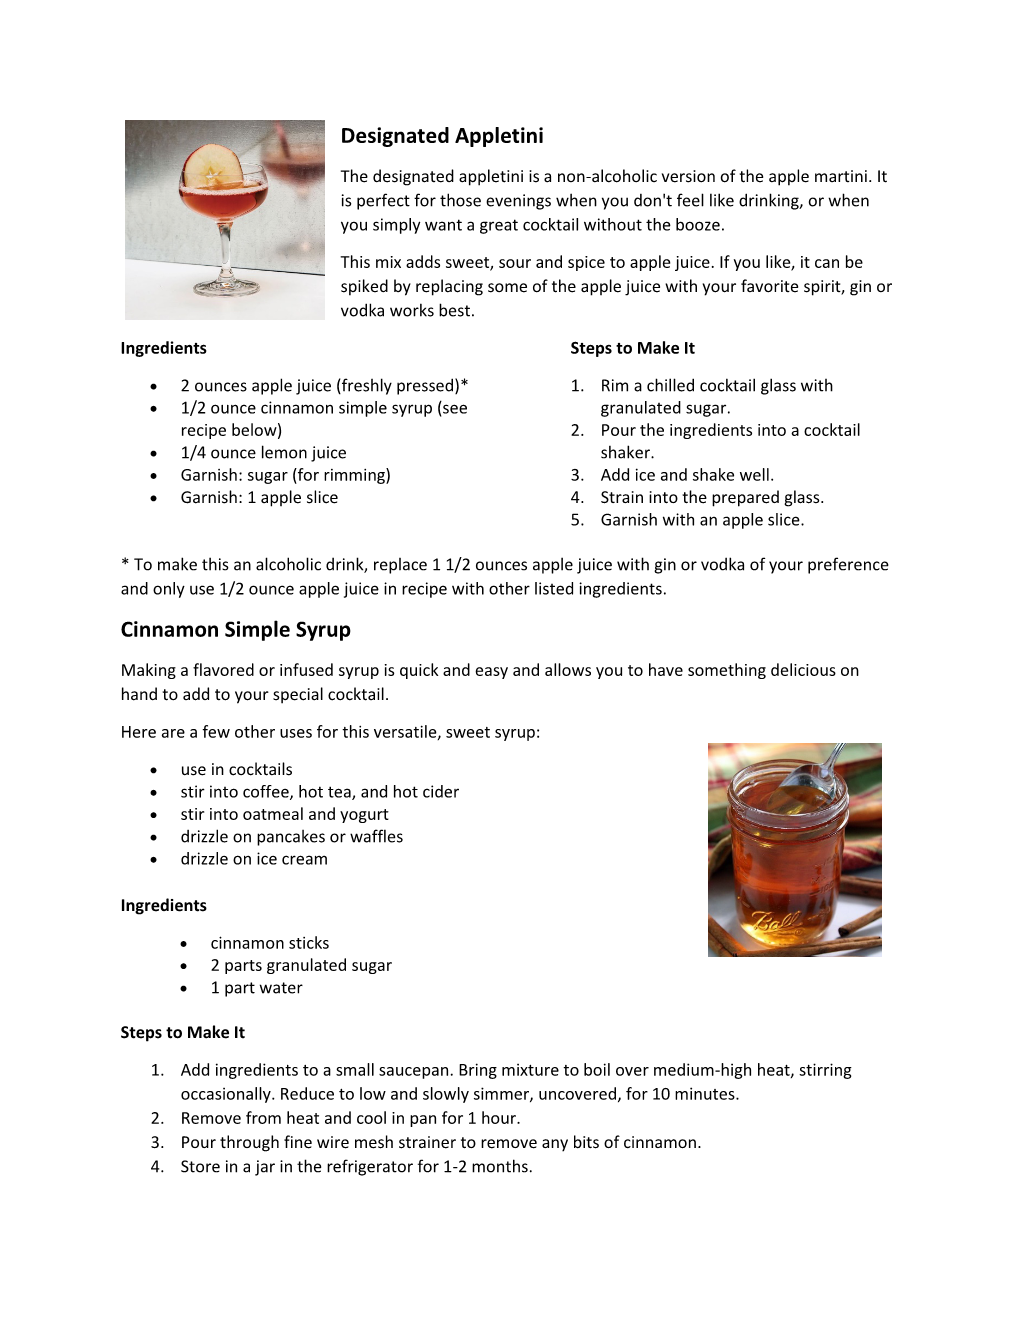 Designated Appletini Cinnamon Simple Syrup